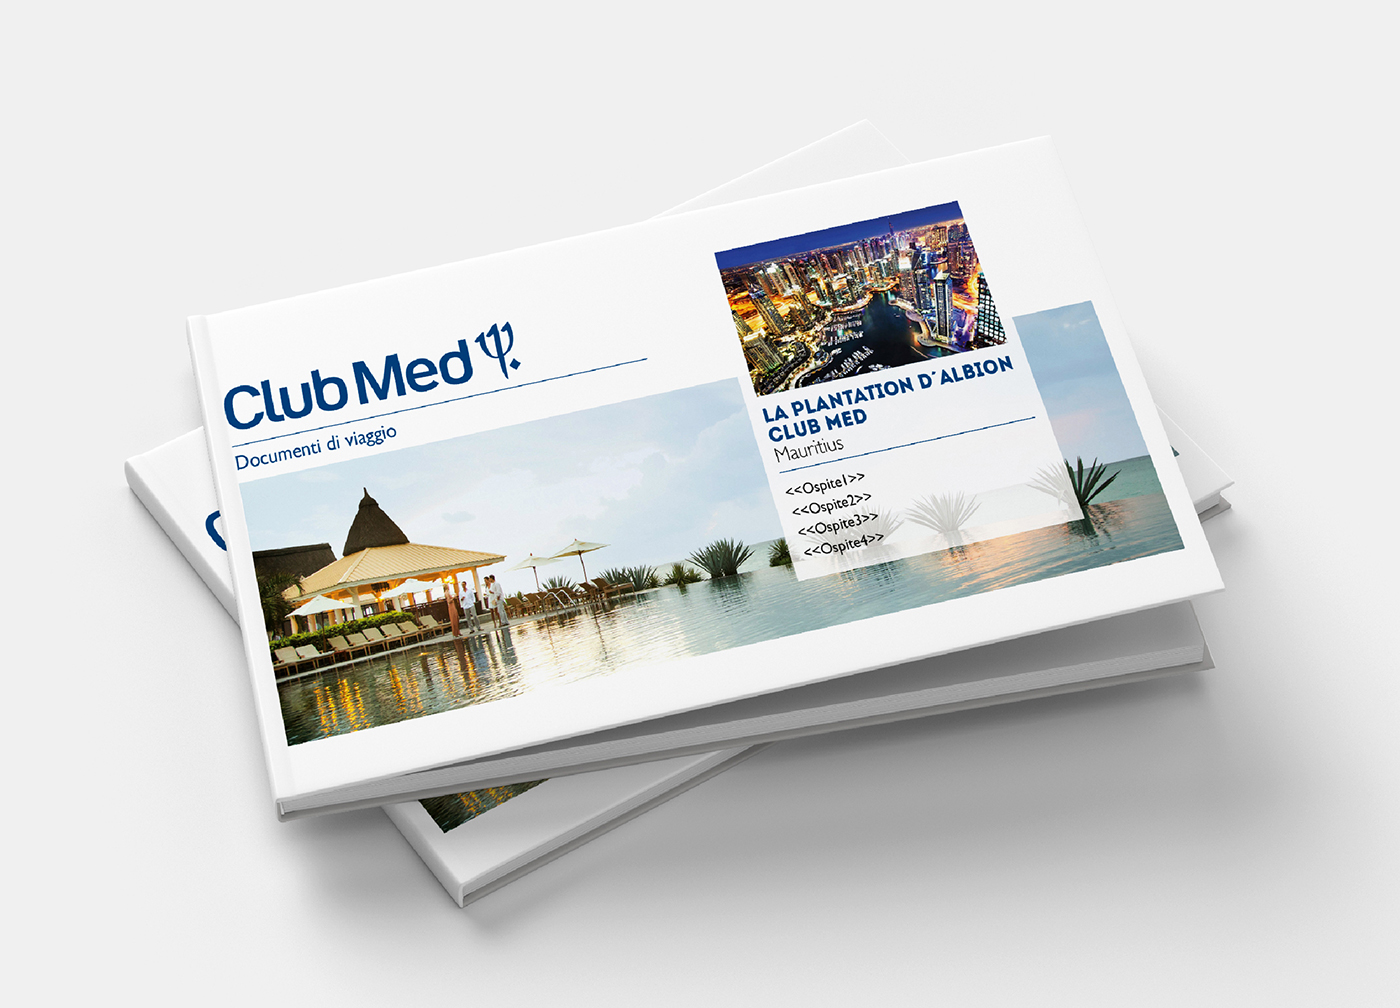 Documenti di viaggio Club Med